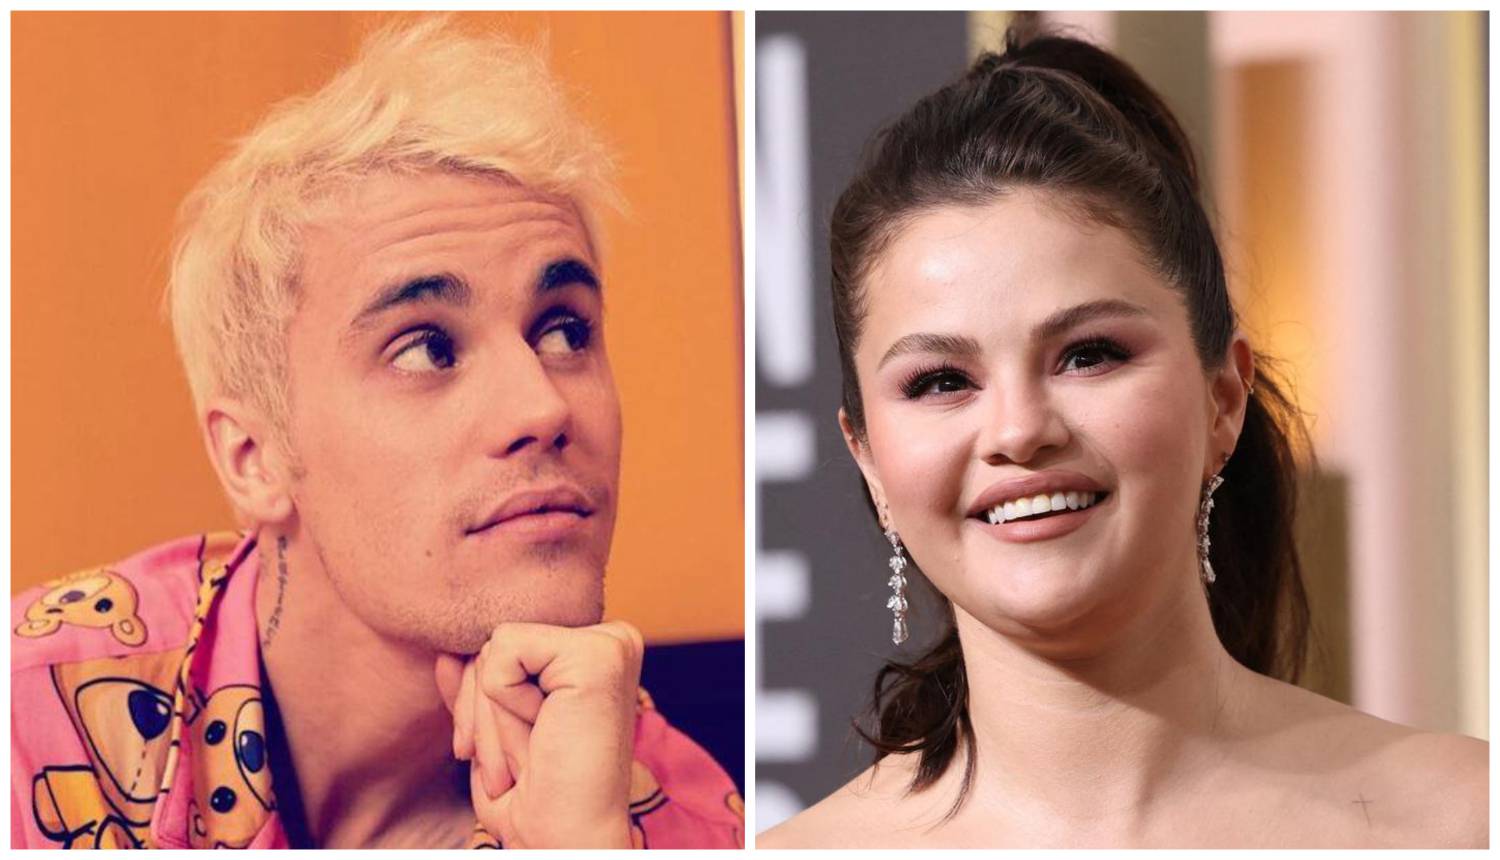 Fanovi zbog poklona zaključili: Bieberu, oženjen si, a još misliš na bivšu djevojku Selenu Gomez